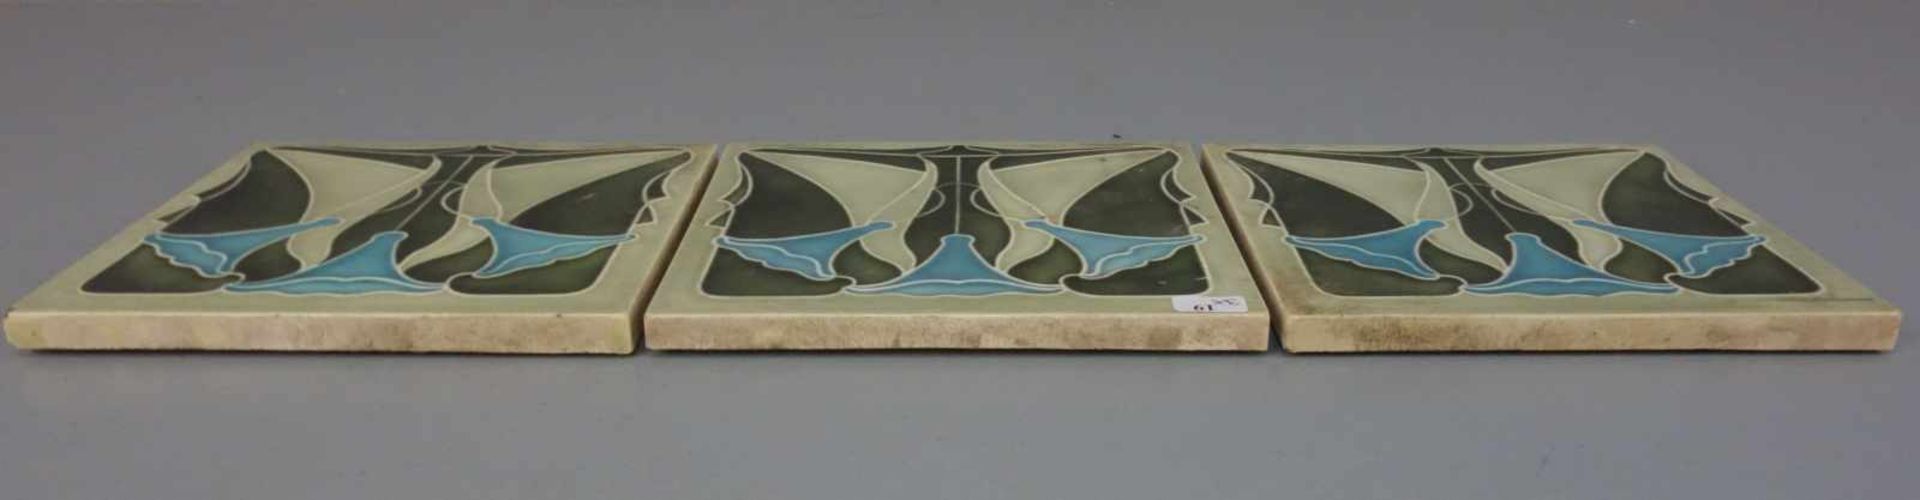 3 JUGENDSTILFLIESEN / art nouveau tiles, heller Scherben, um 1900, dreifarbig glasiert mit - Image 5 of 7